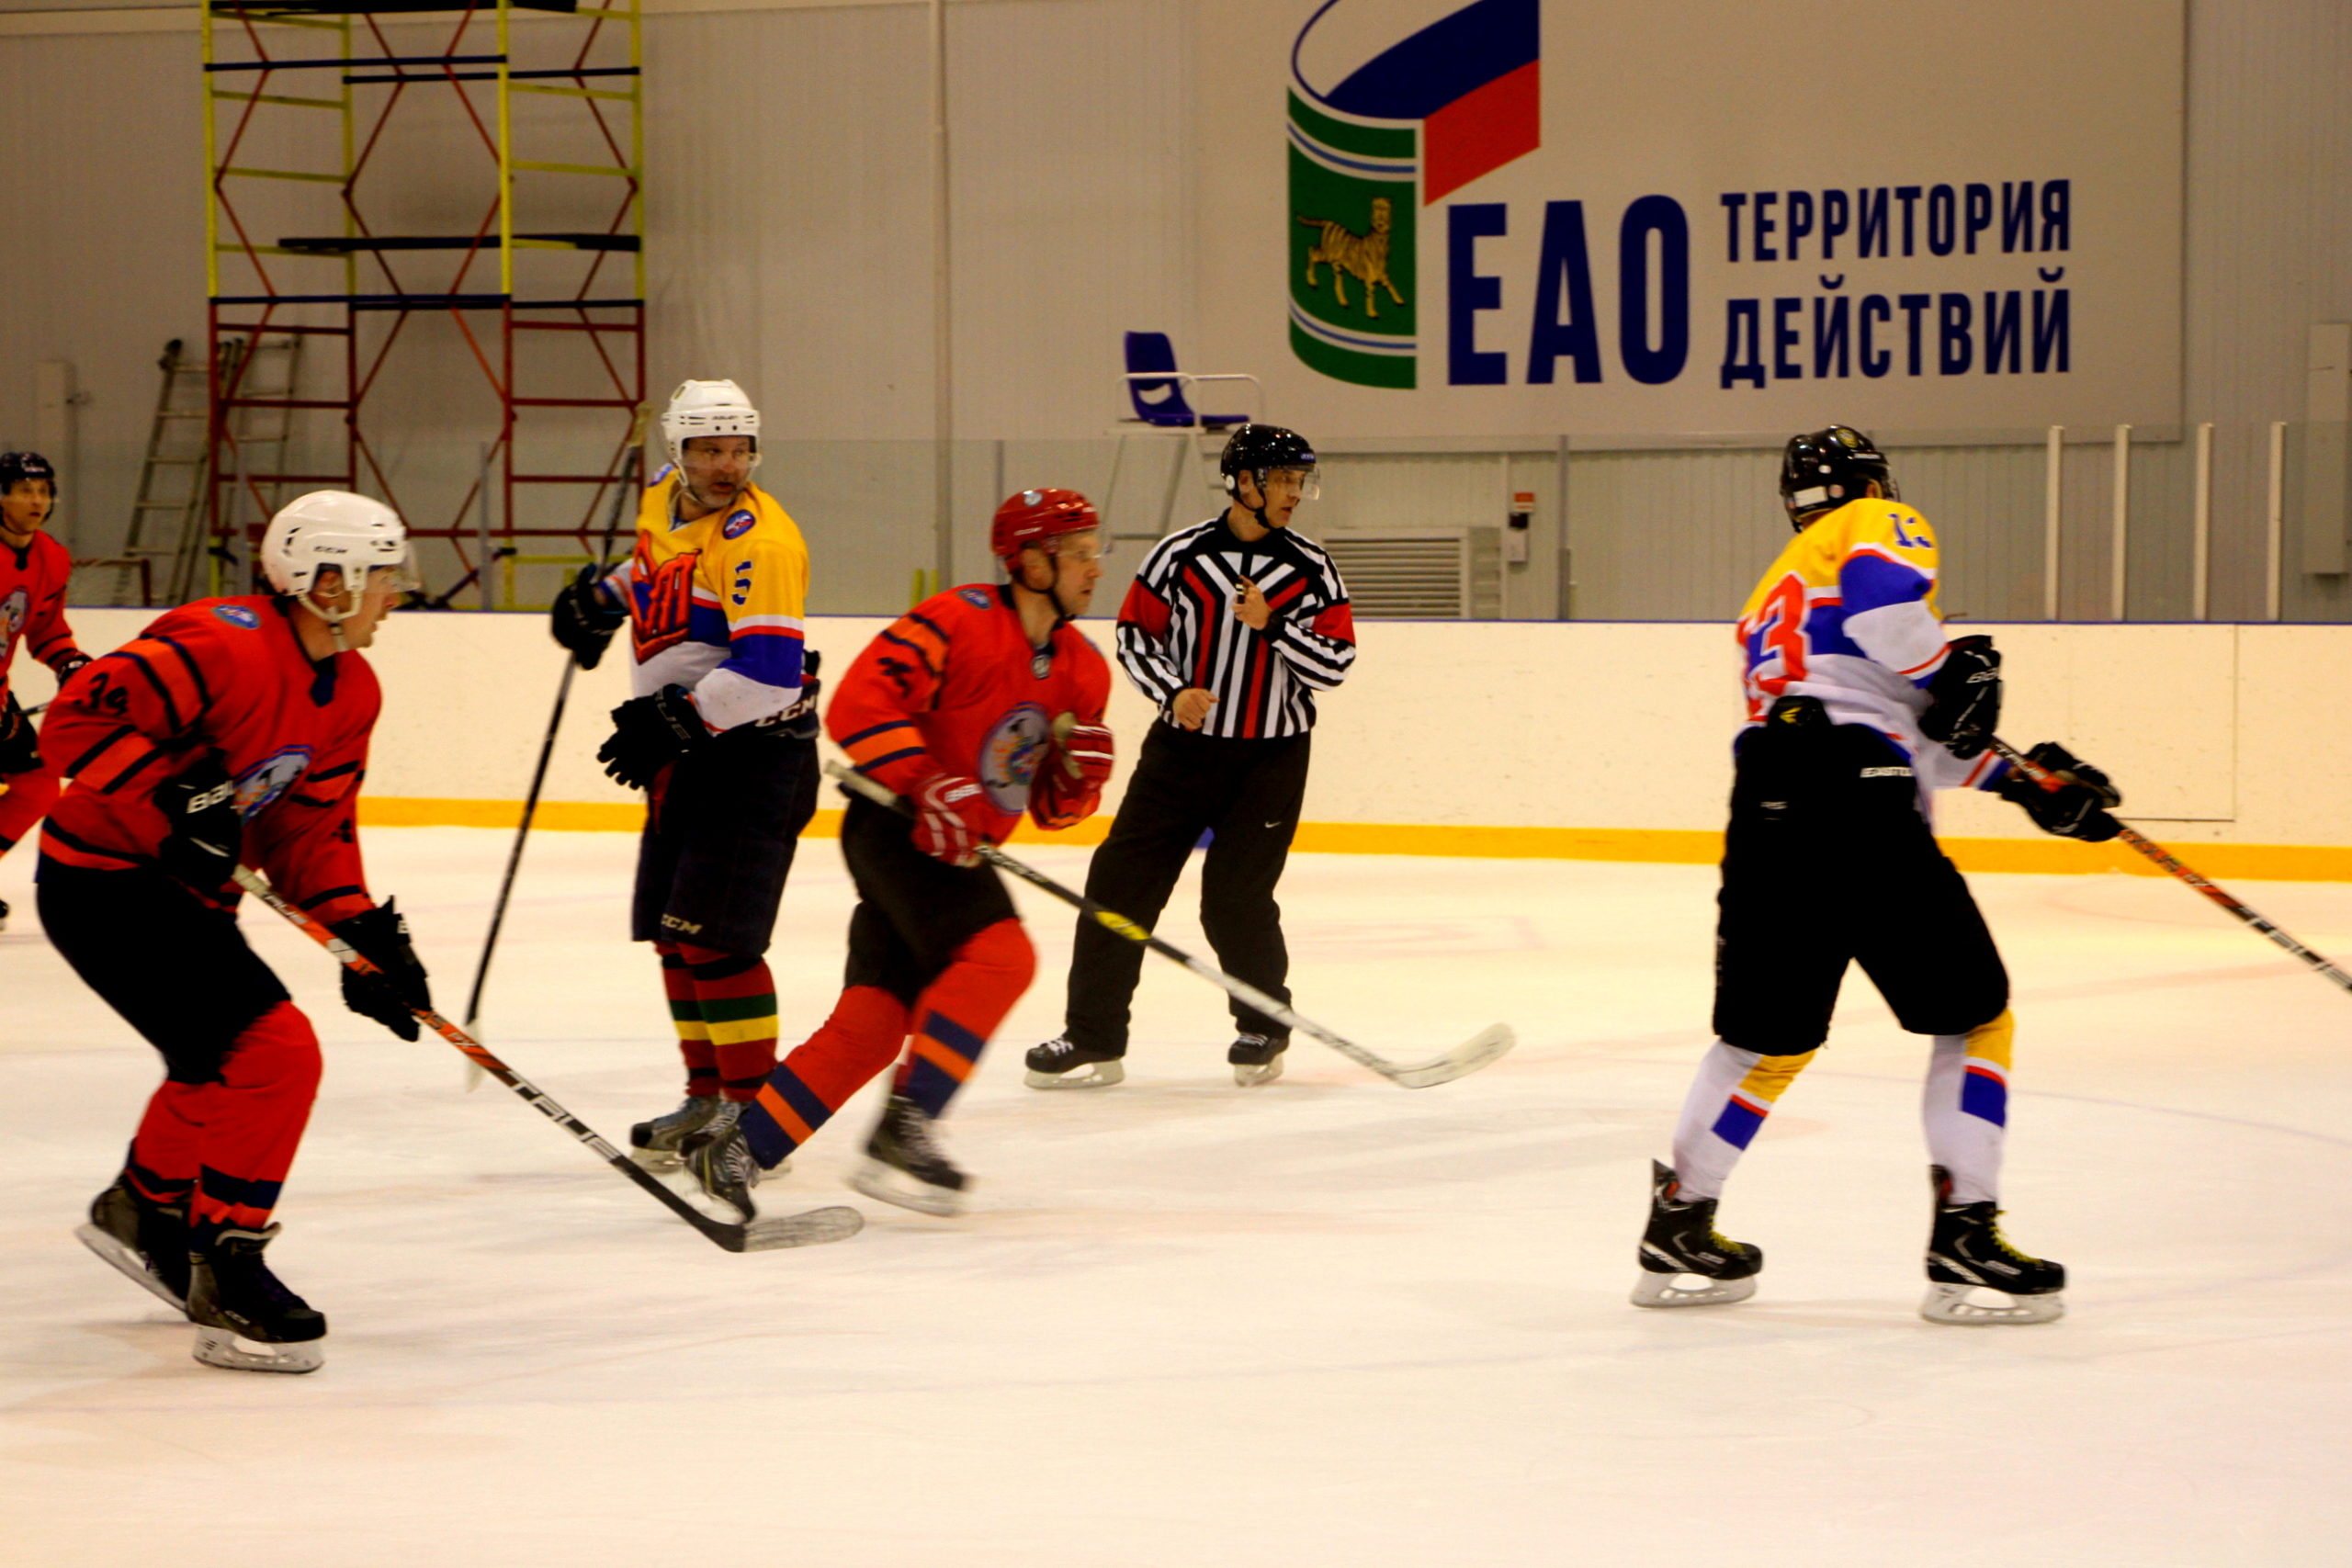 Пожарные ЕАО и спасатели Хабаровского края встретились на льду в товарищеском матче